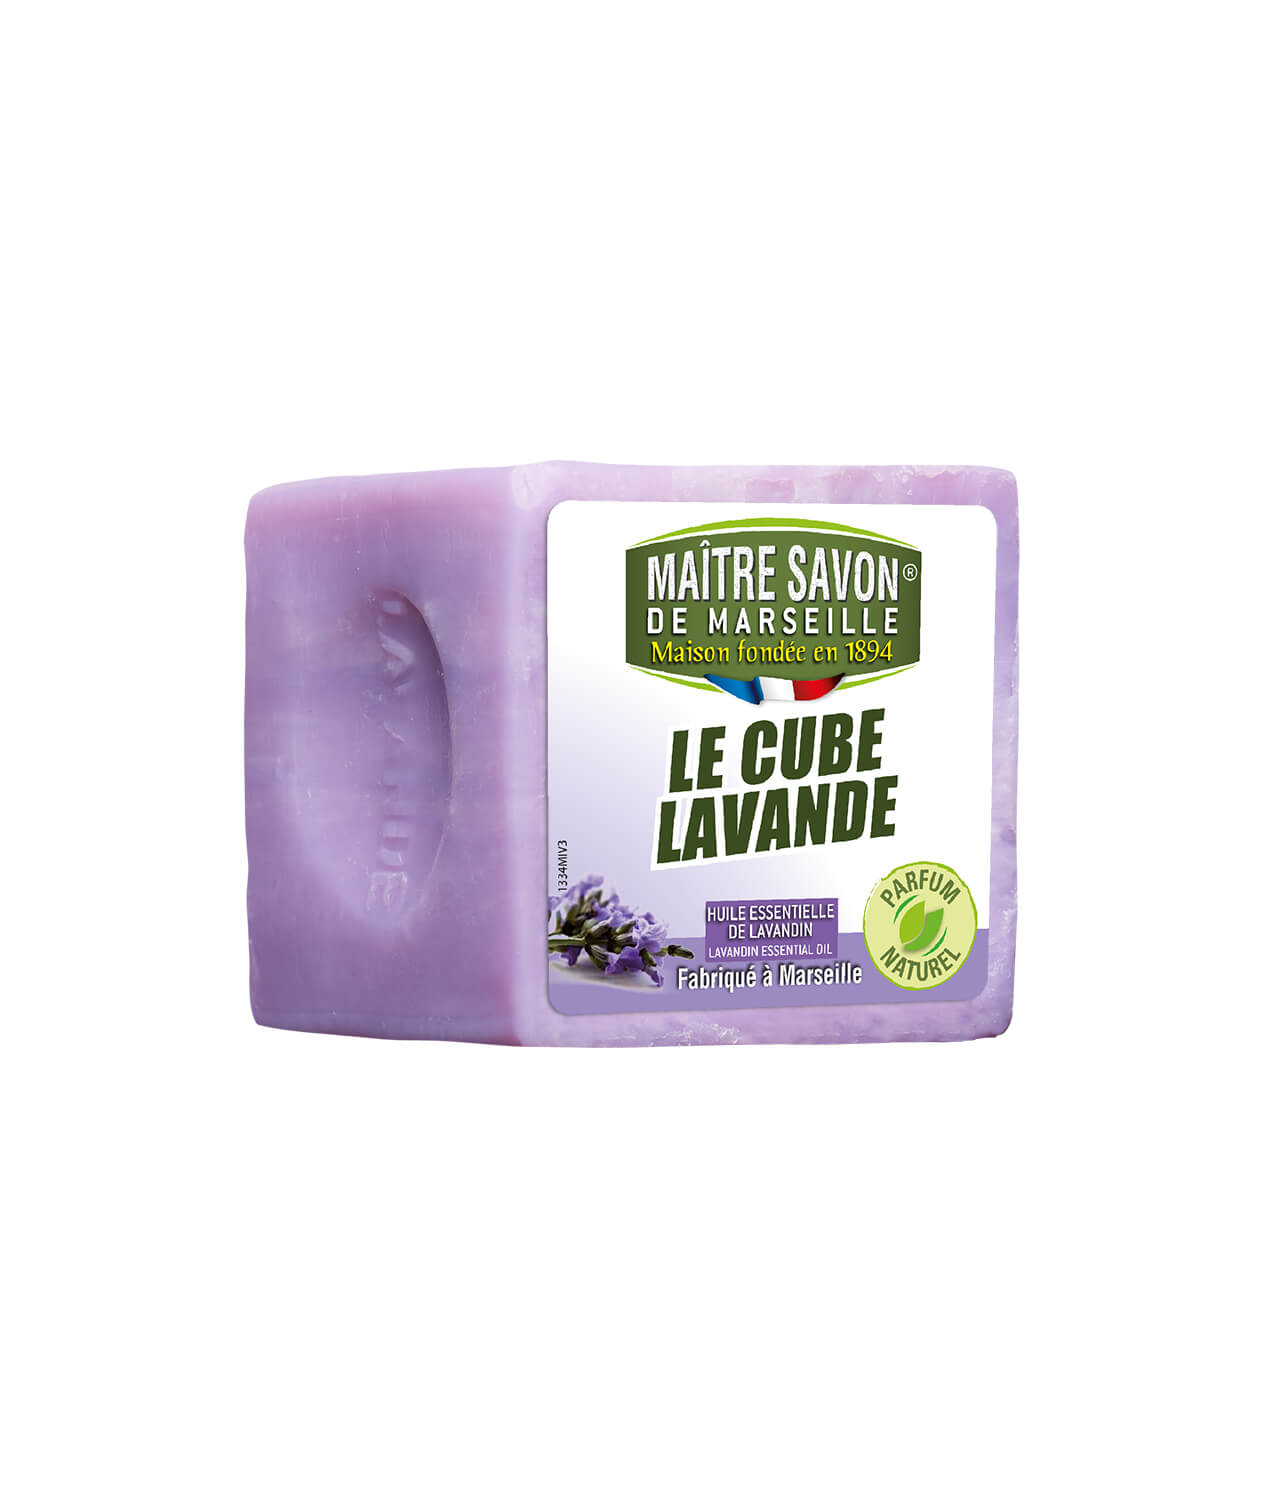 Maitre Savon De Marseille Cube Lavande 300g Produit Dentretien